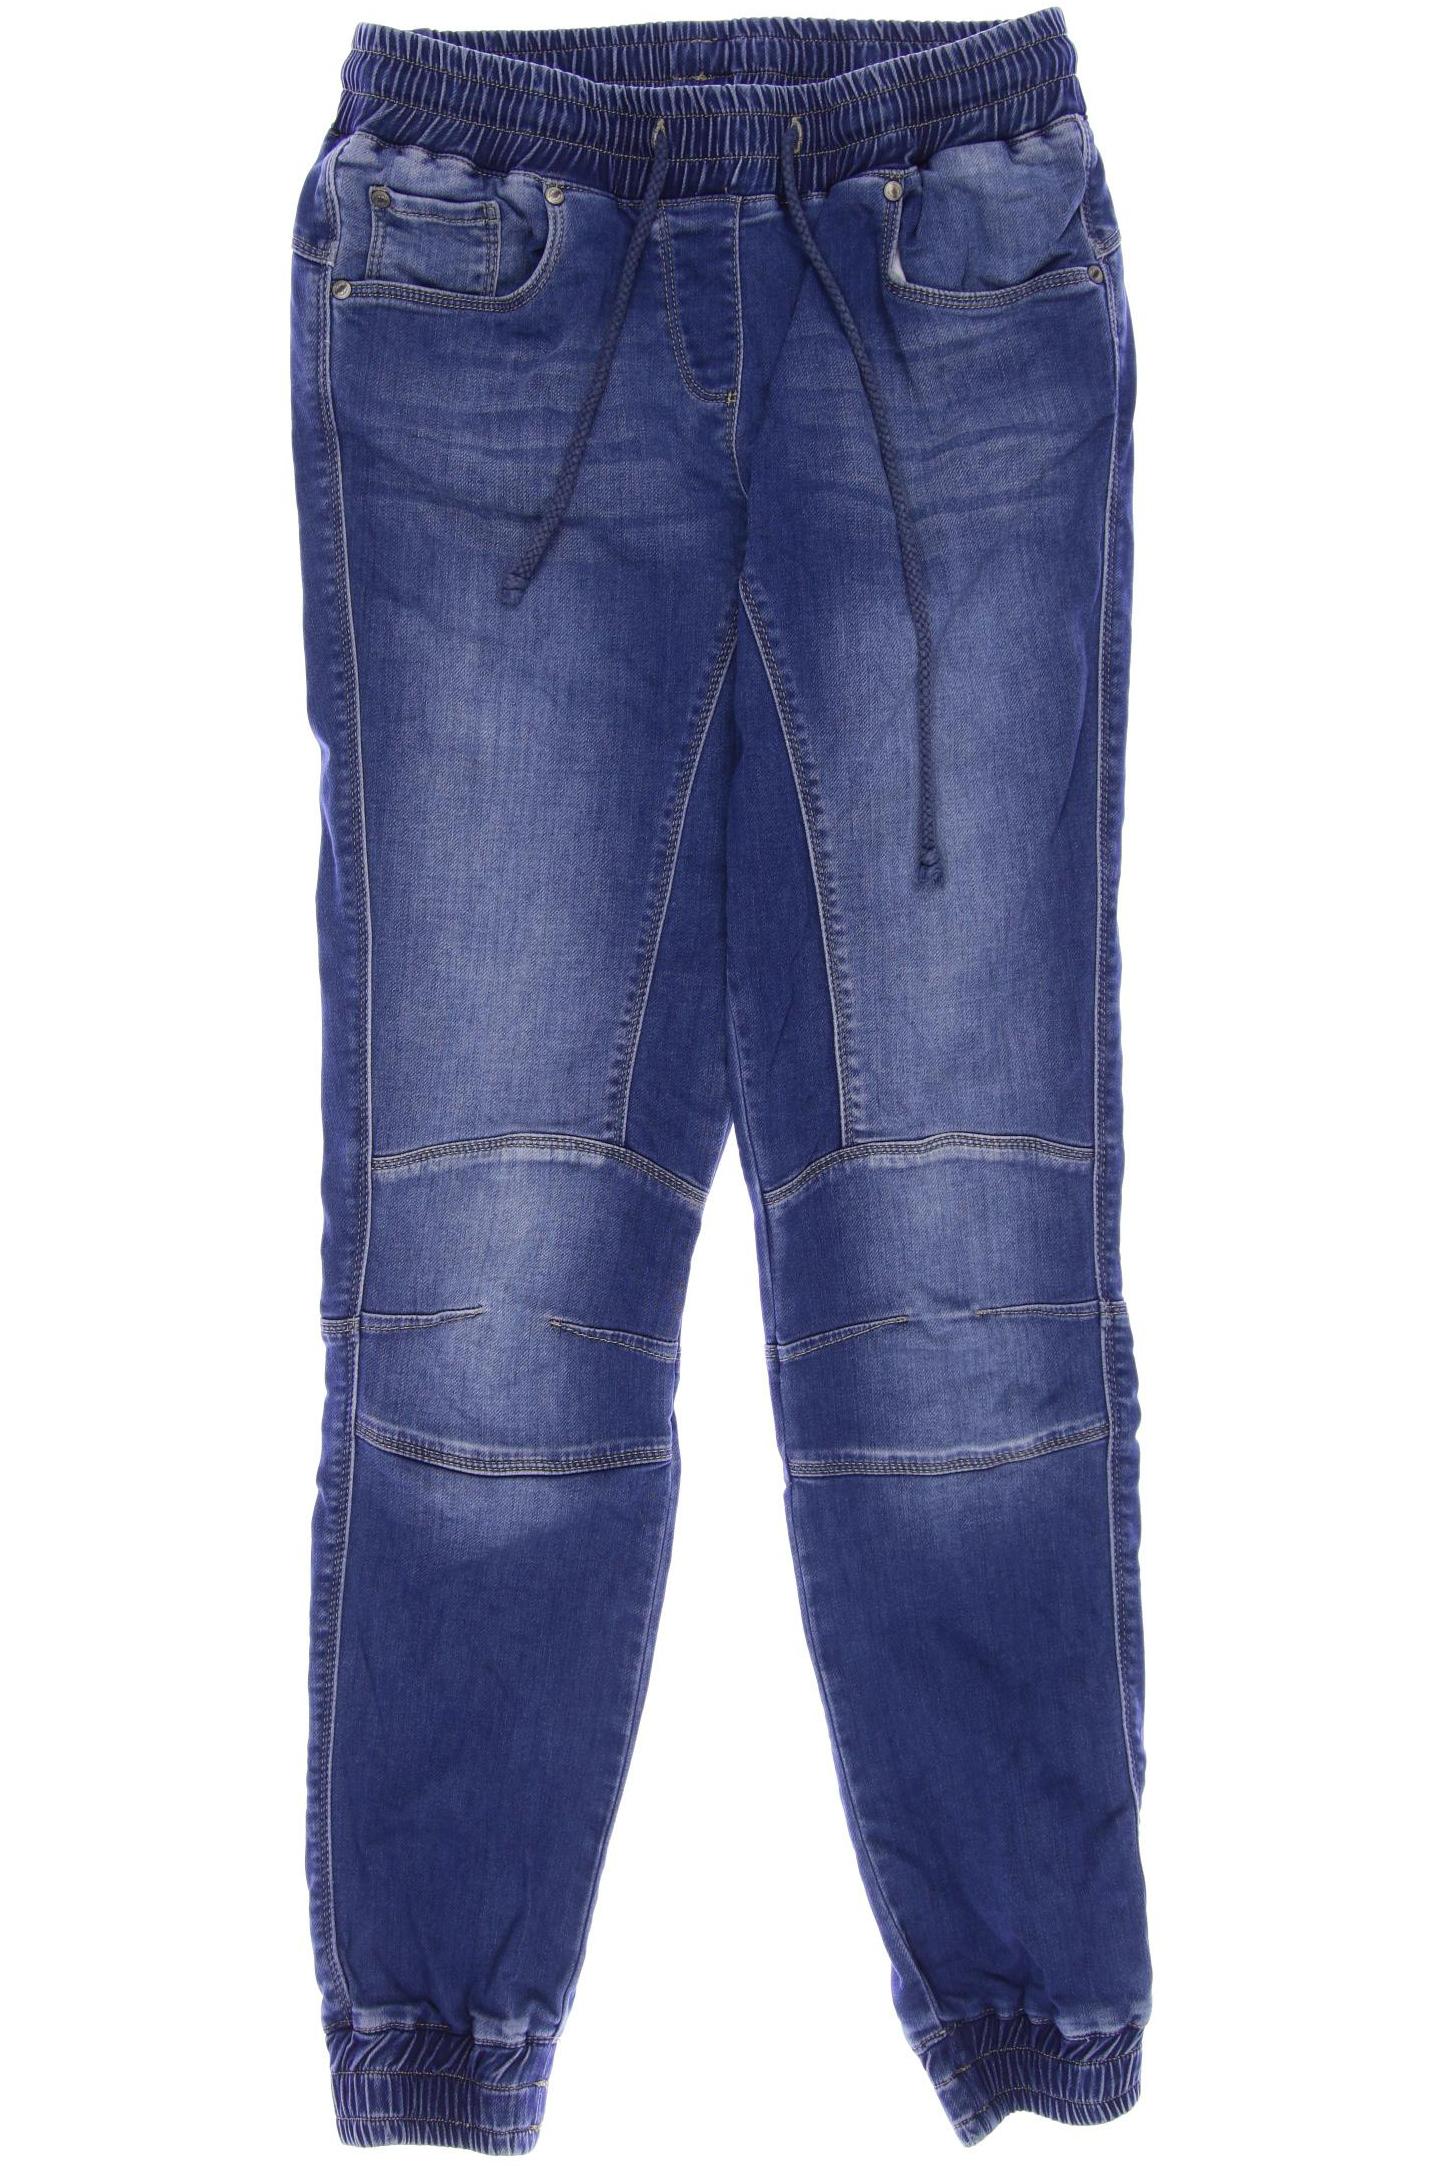 Deerberg Damen Jeans, blau von Deerberg